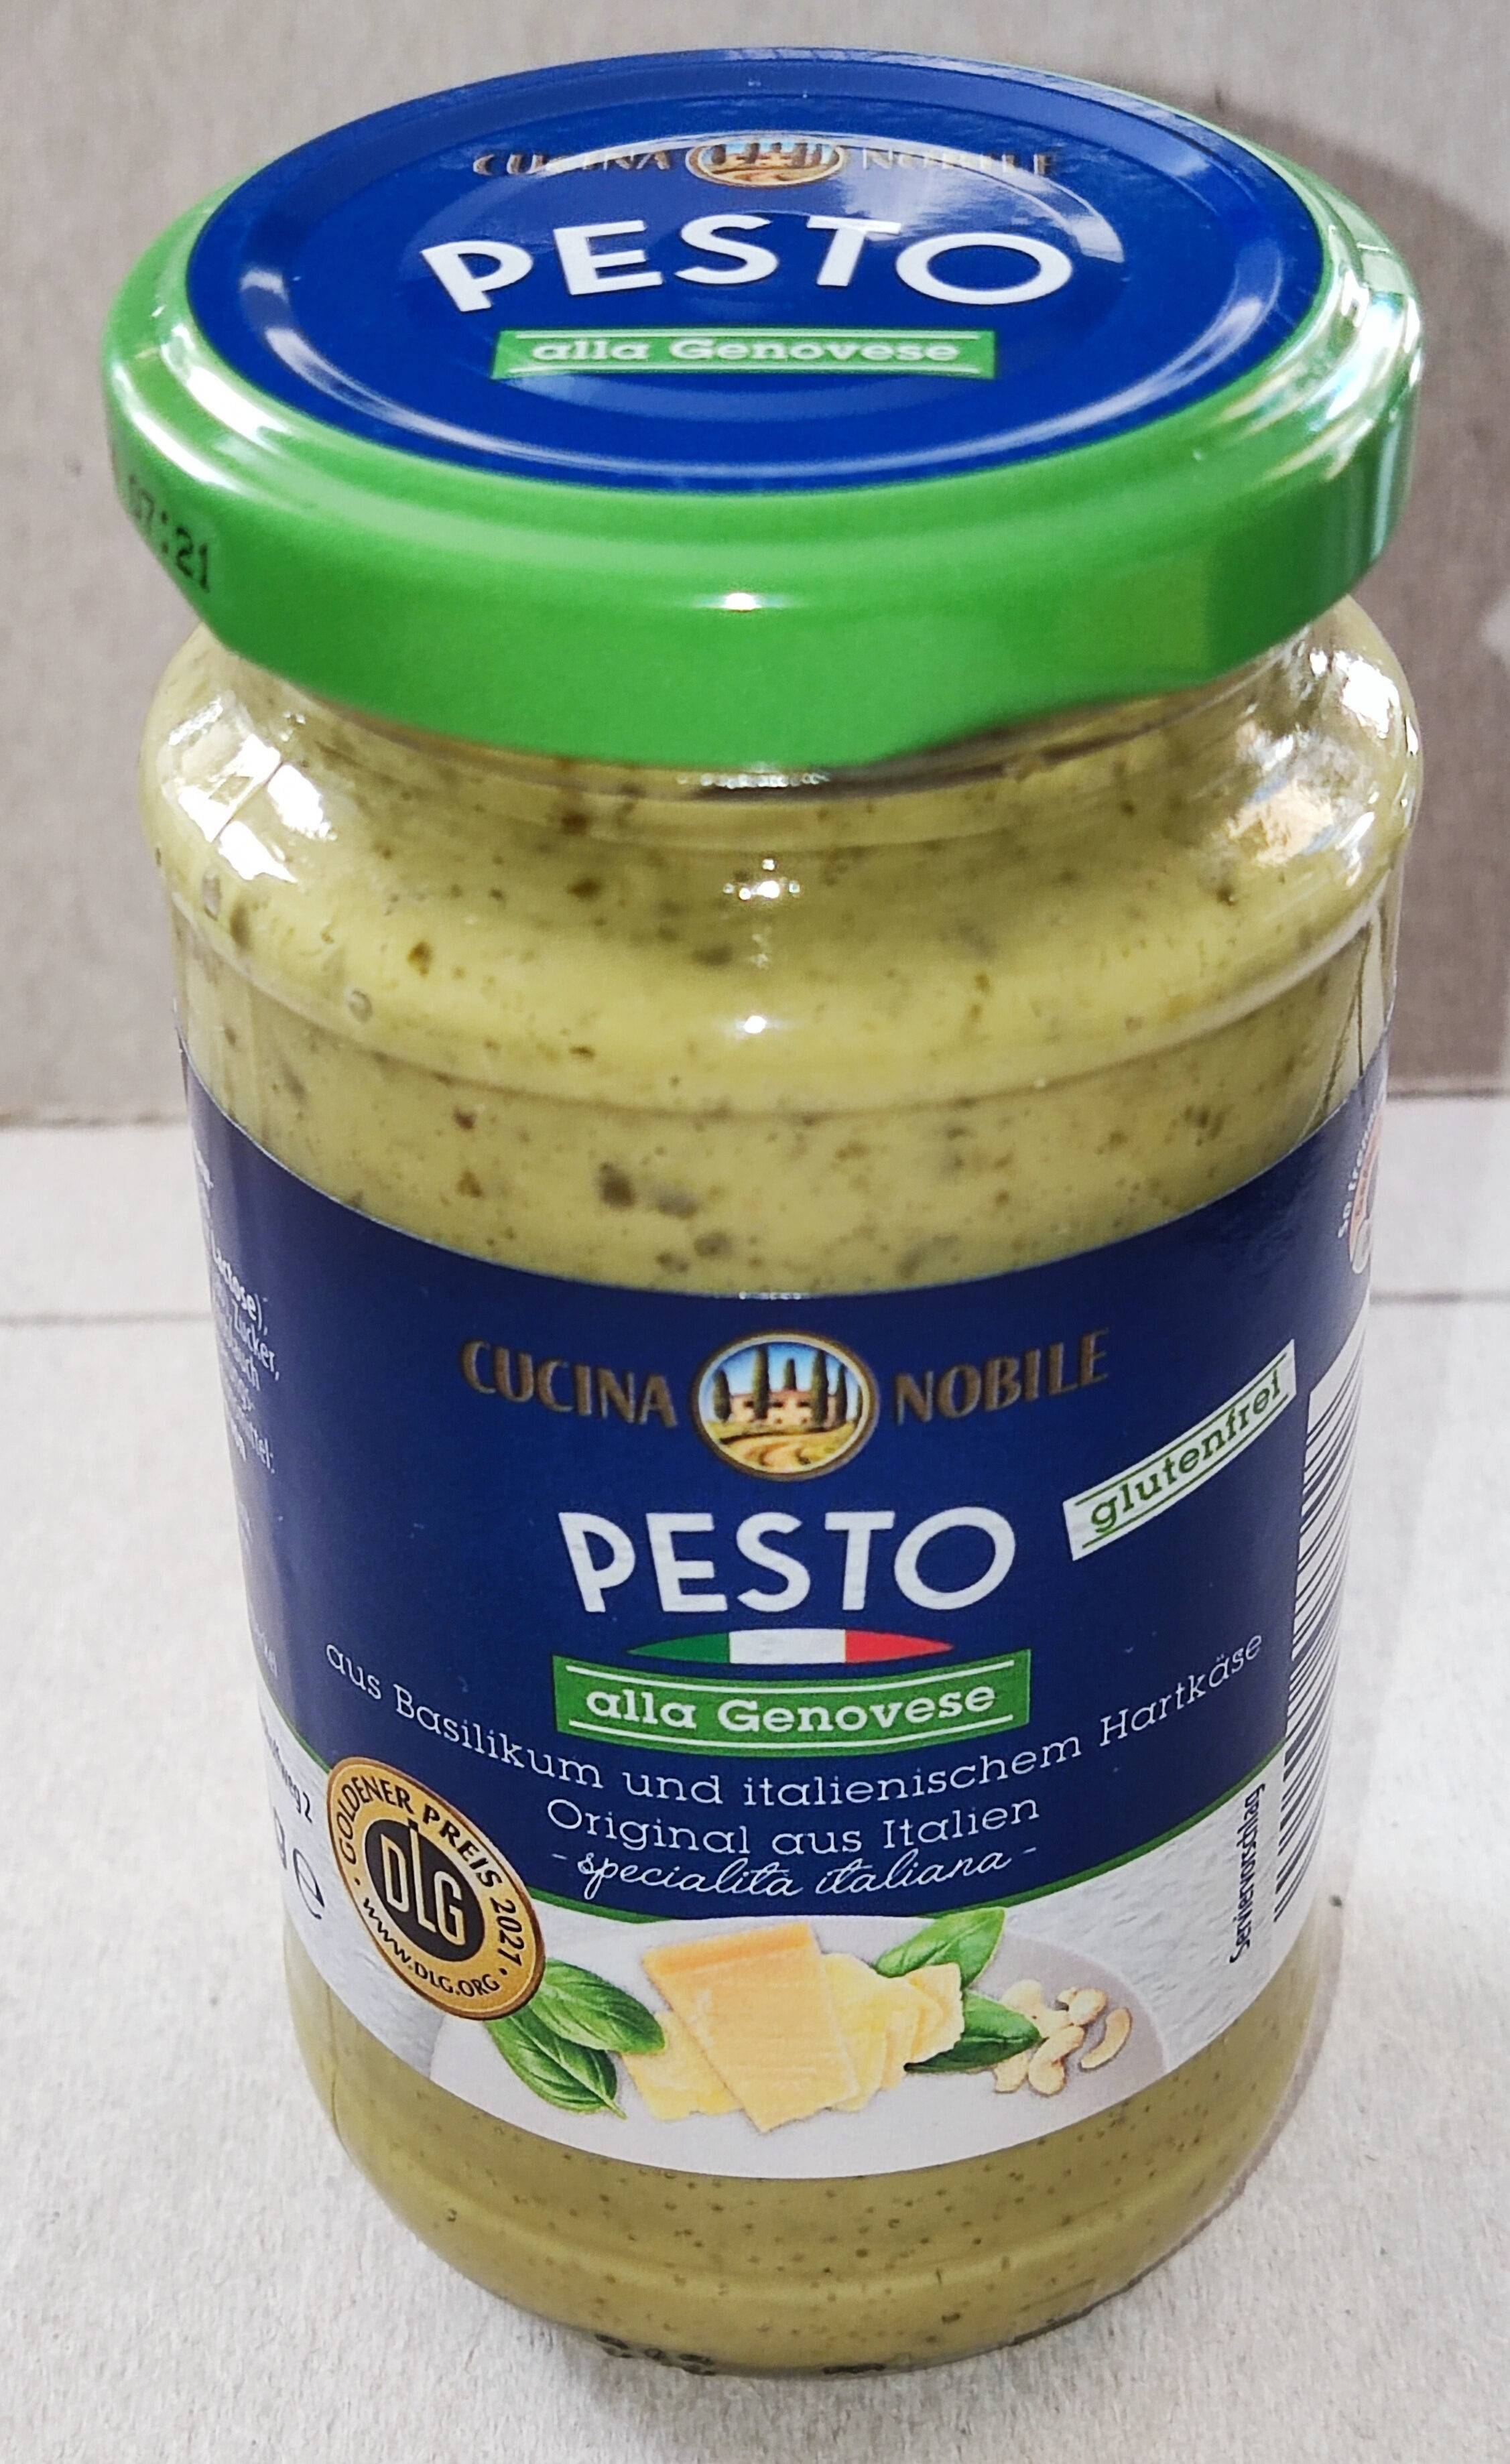 Pesto alla Genovese - Product - de